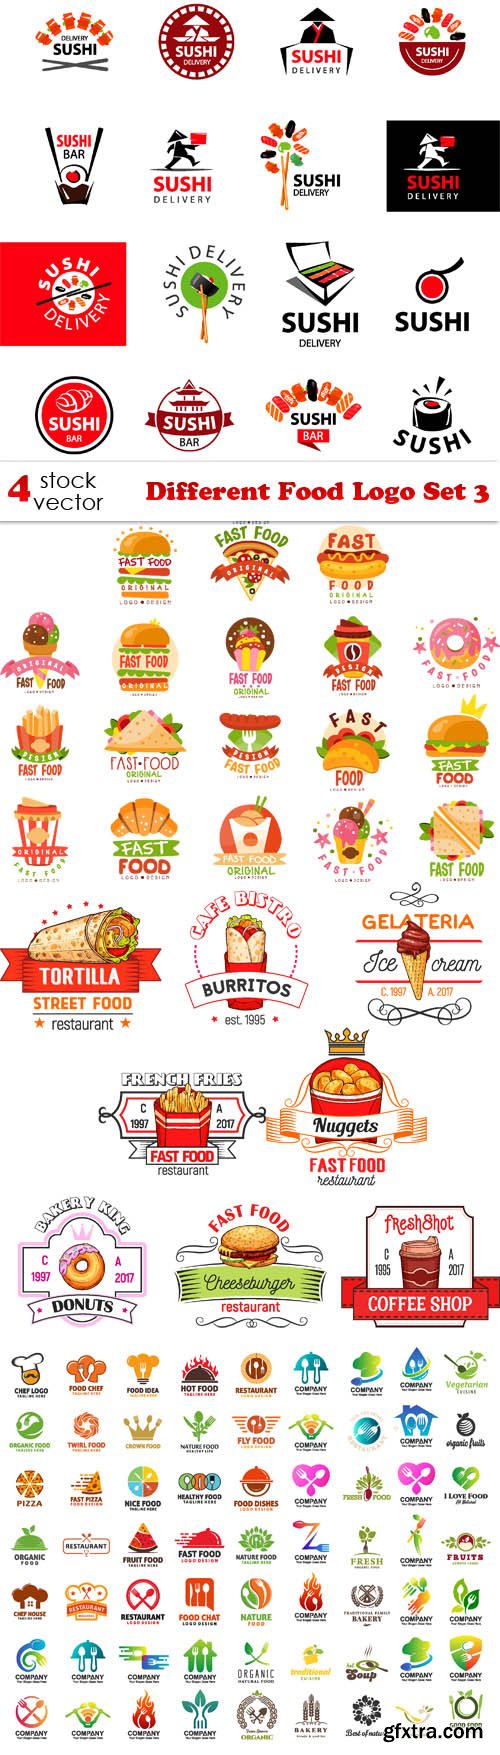 Vectors - Different Food Logo Set 3